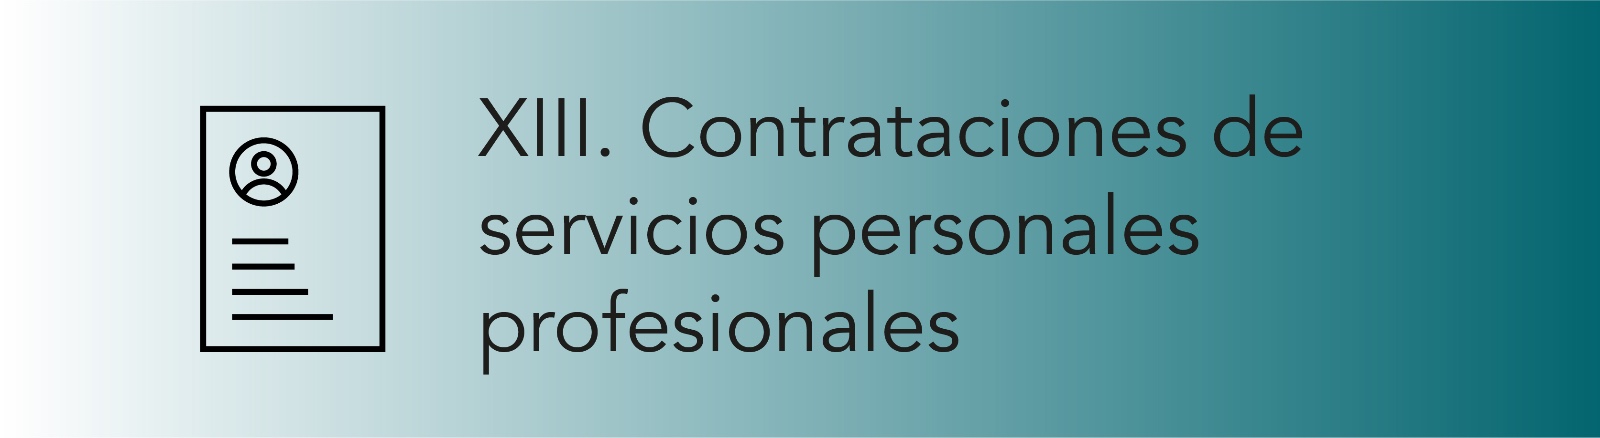 Imagen que permite conocer las Contrataciones de servicios personales profesionales